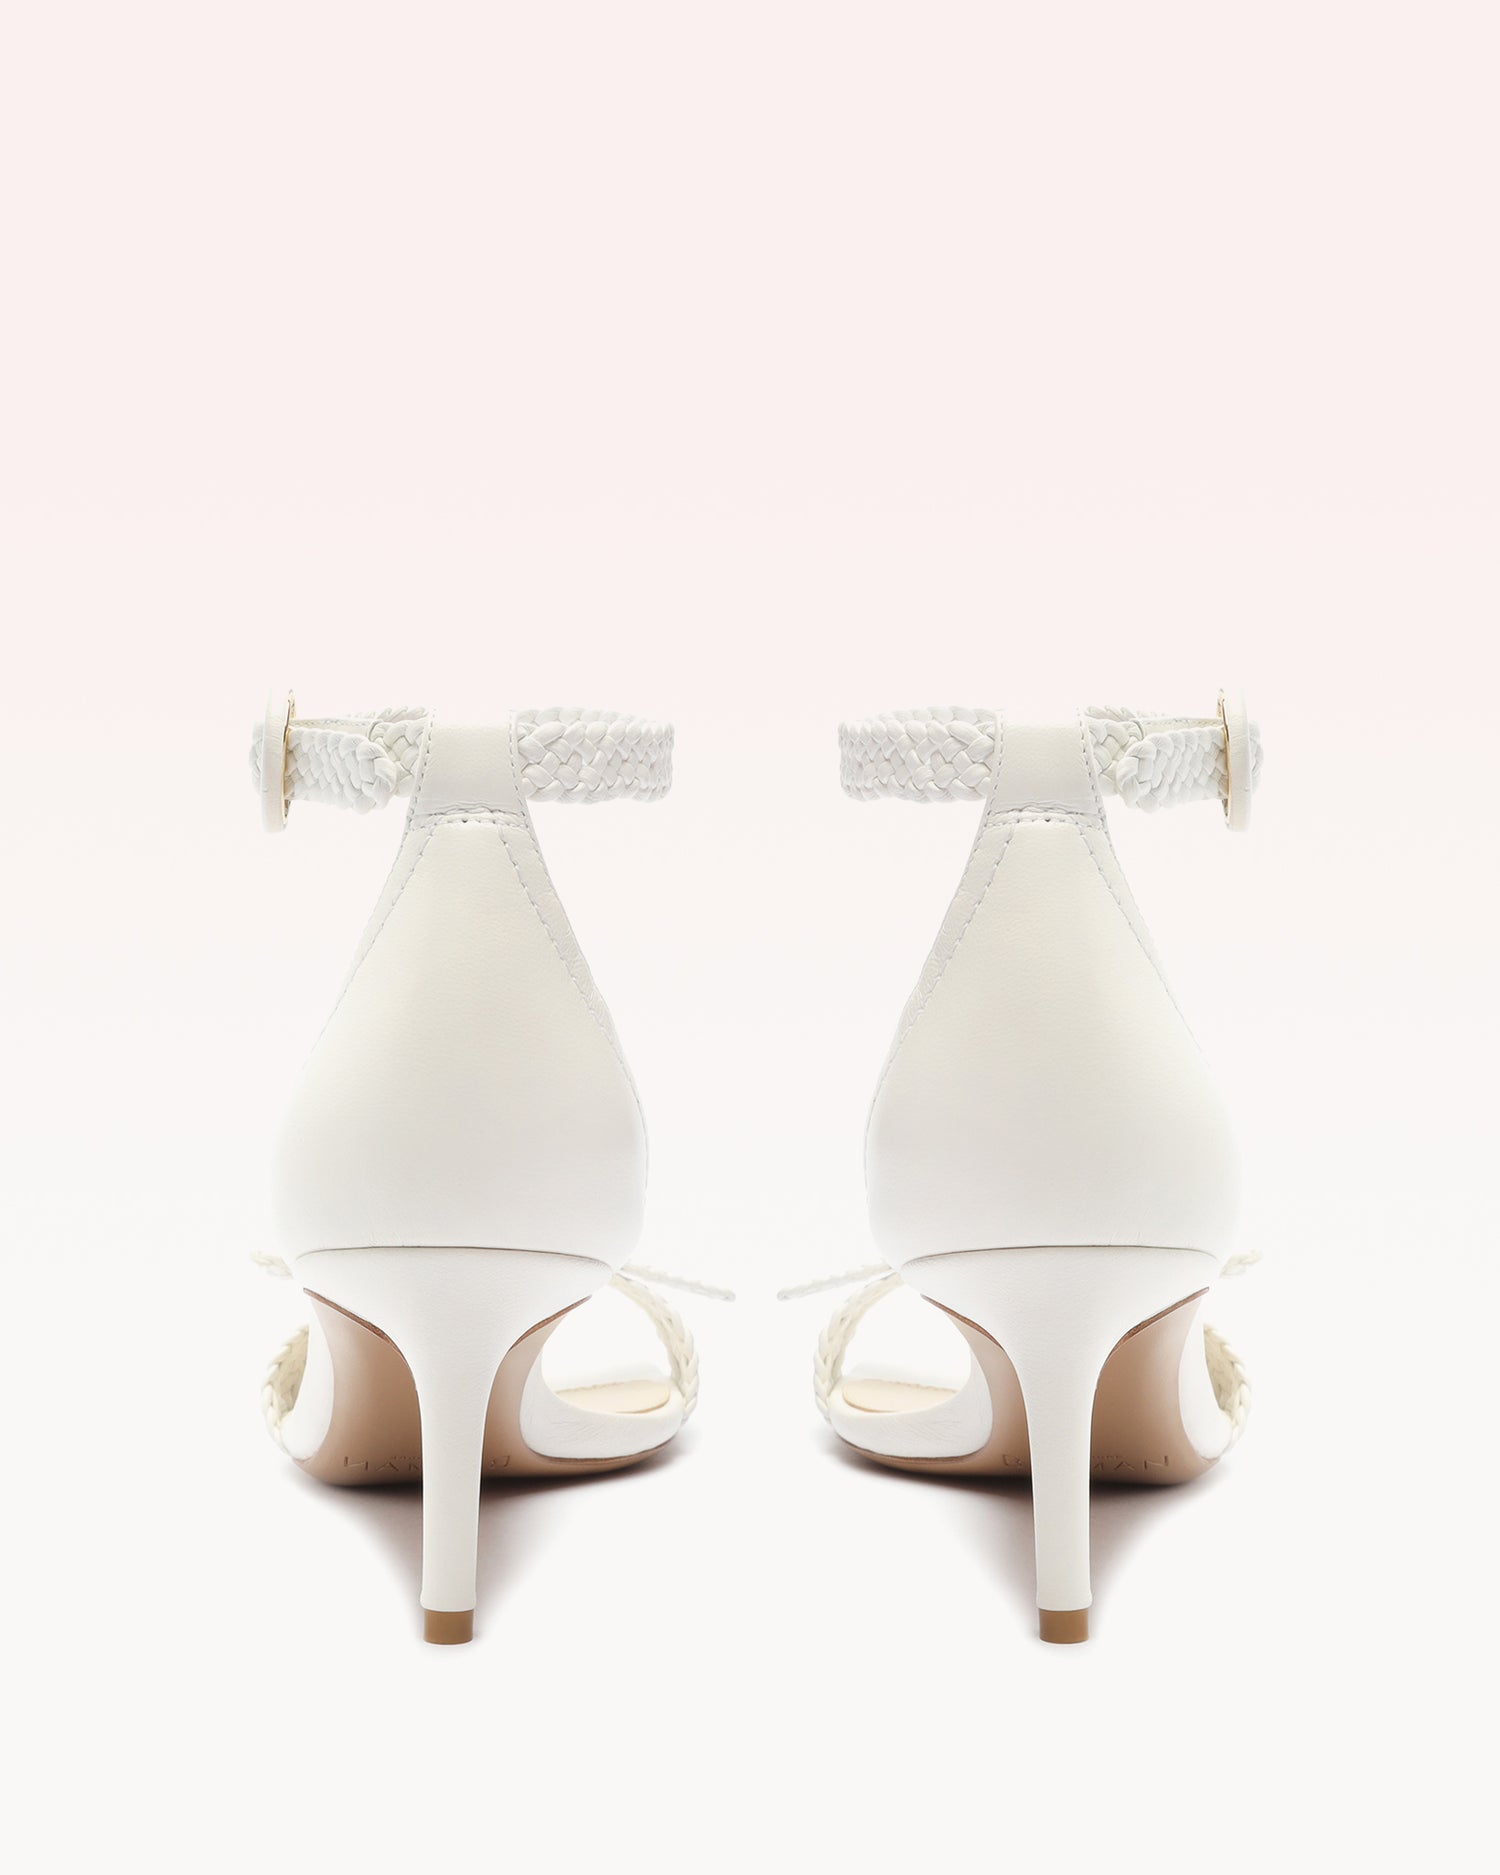 Clarita 60 Tresse White Sandals S/24   